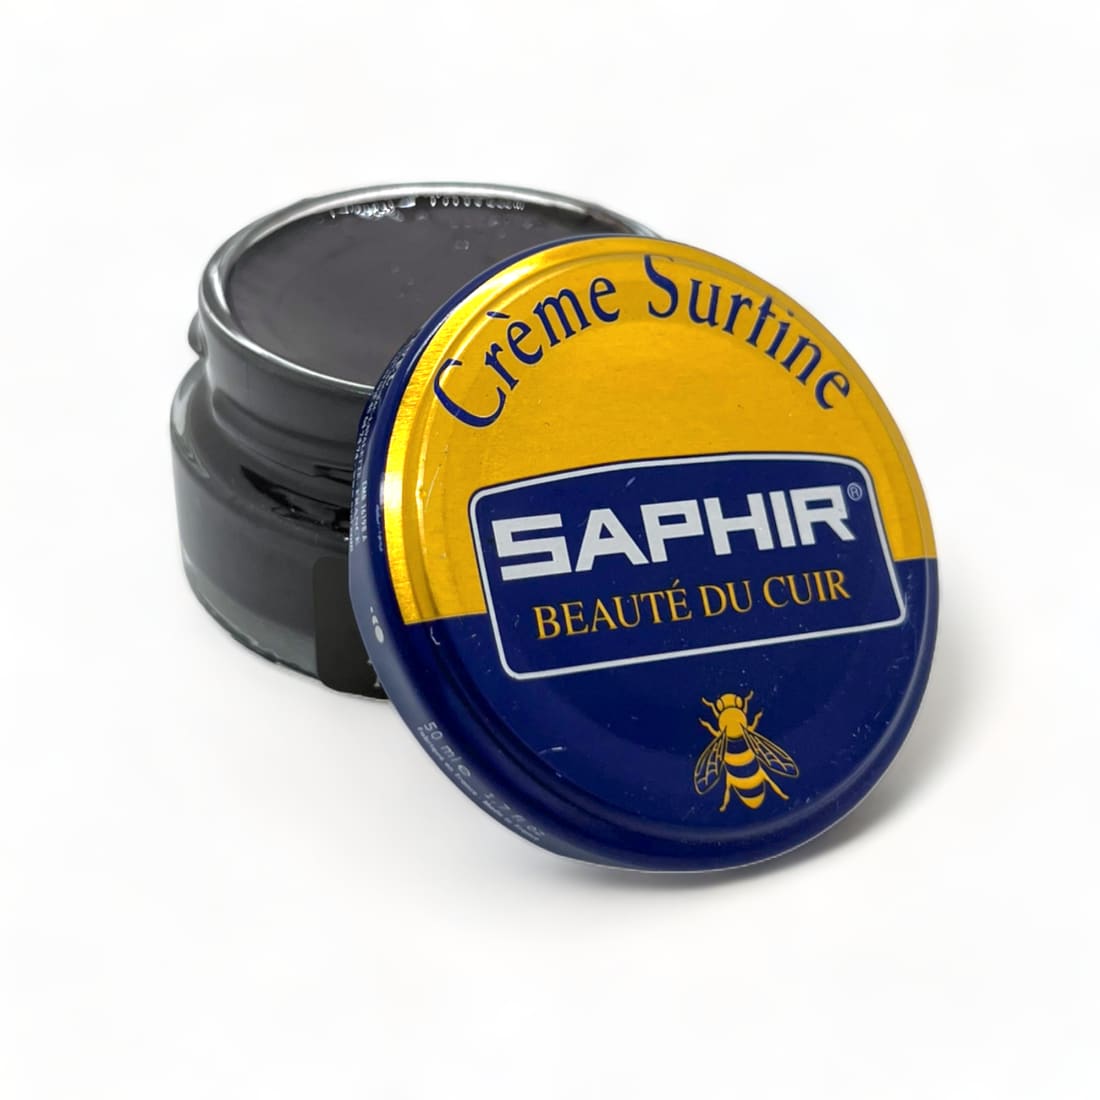 Cirage Crème Surfine Vison - Saphir - 50 ml - Accessoires